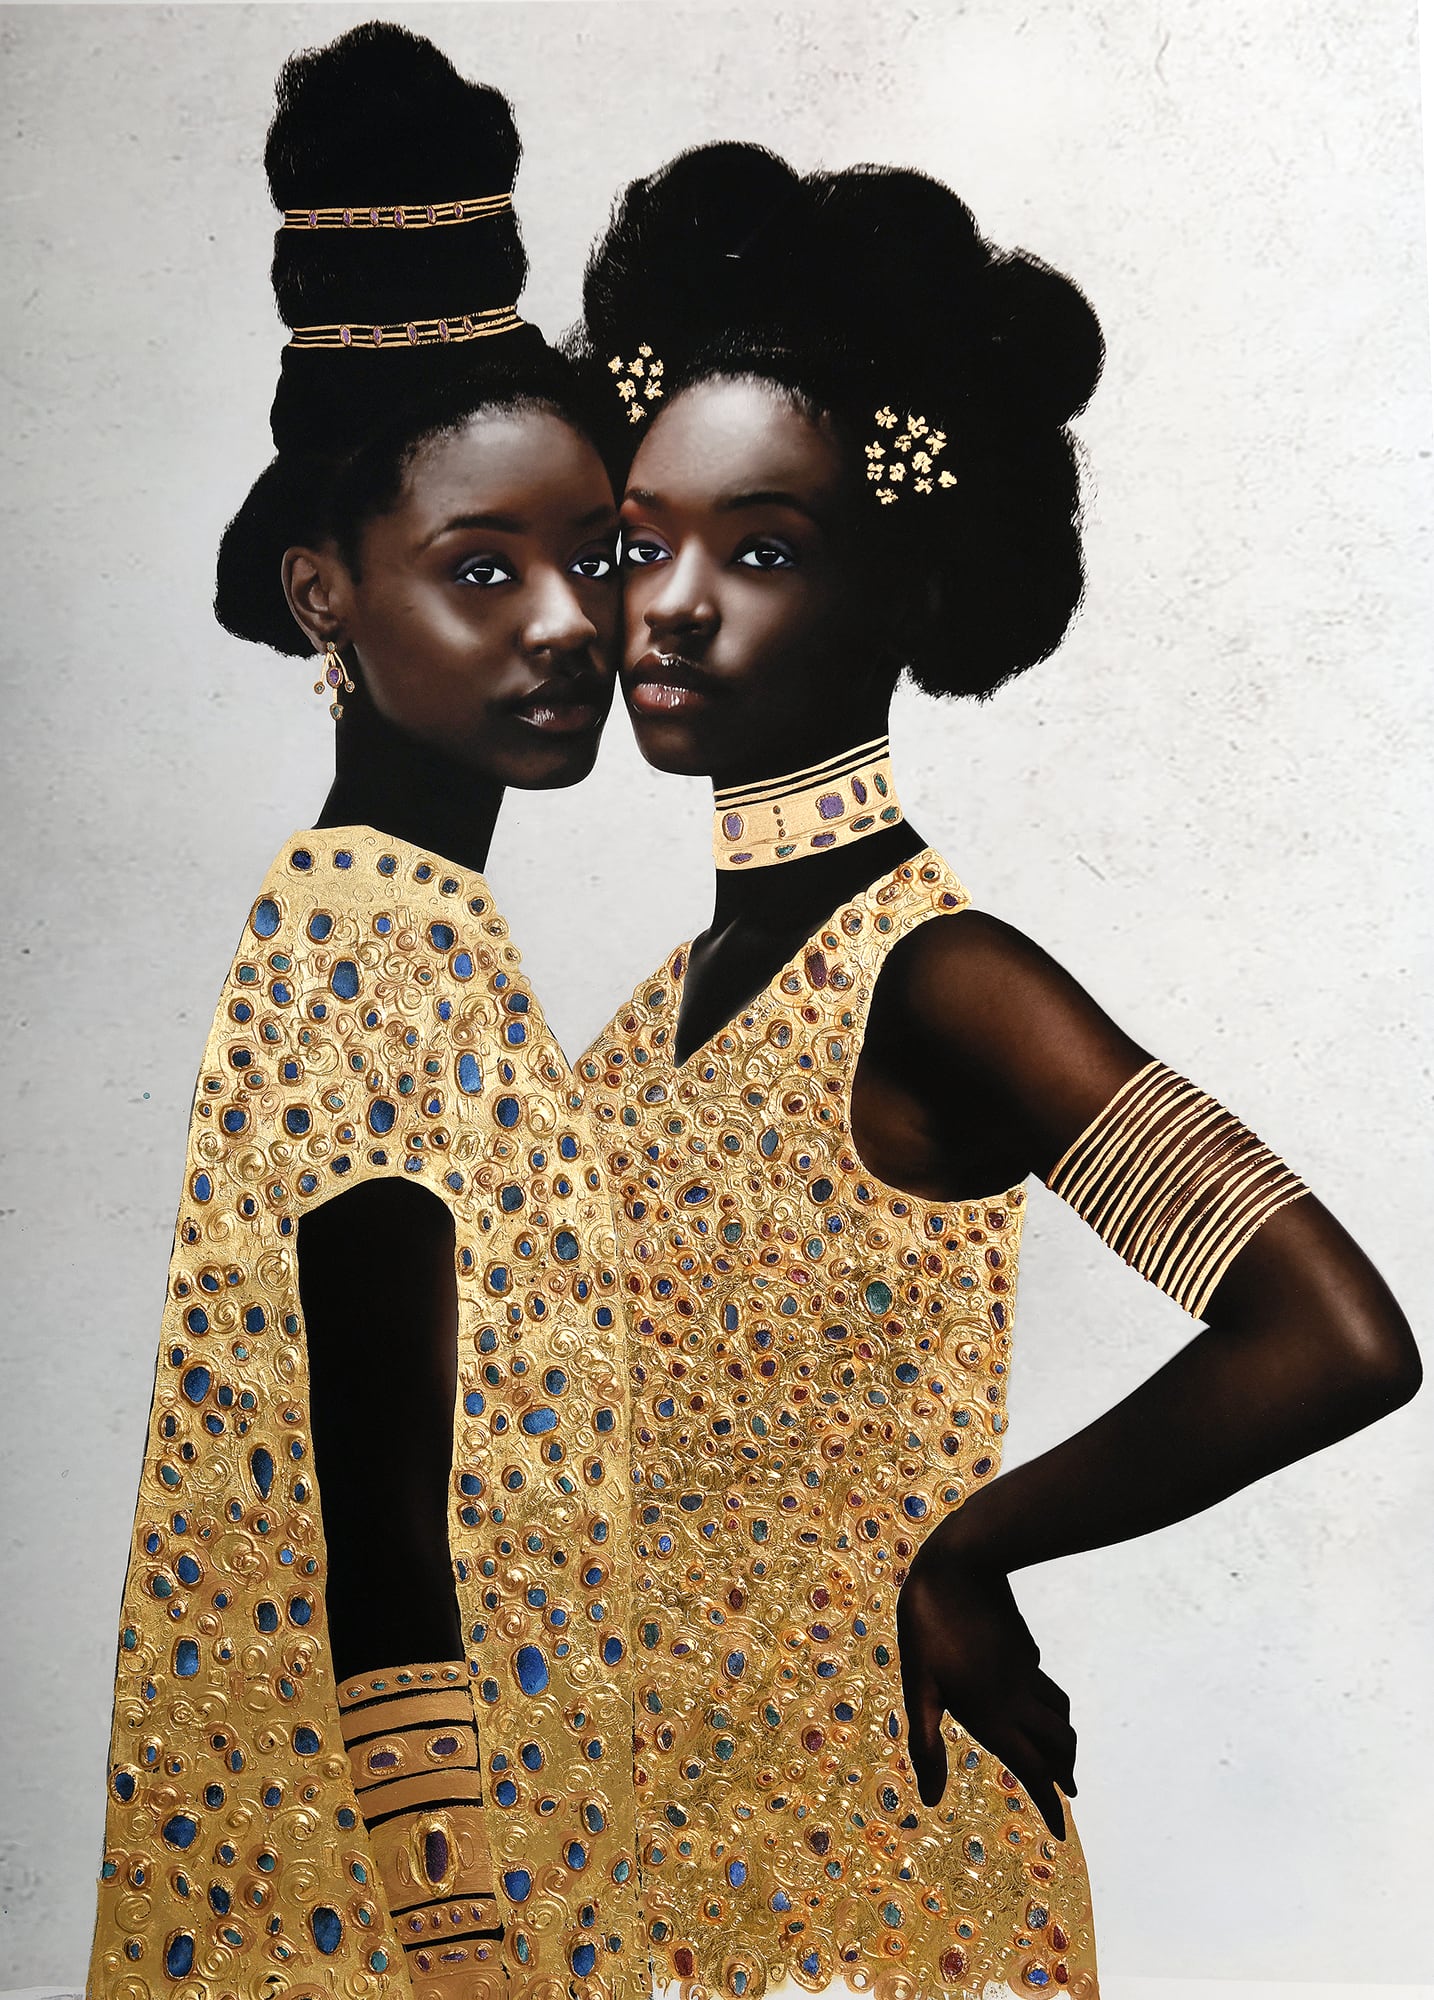 el pdoer de la union en dos mujeres negras con detalles en oro fotografia de tawny chatmon